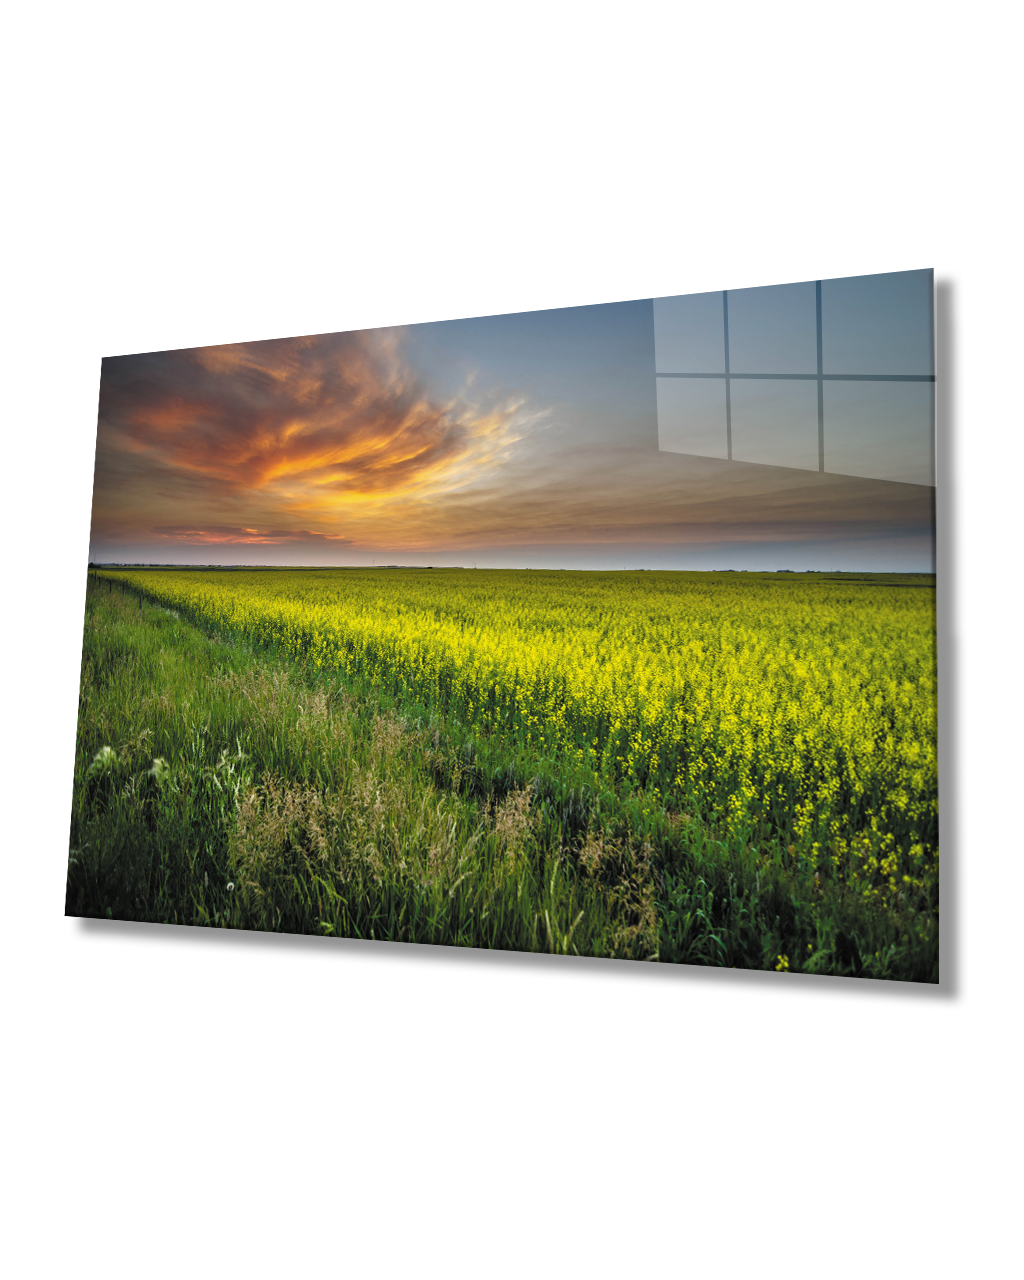 Gün Batımında Çiçek Tarlası Manzaralı Cam Tablo  4mm Dayanıklı Temperli Cam Glass Table With Flower Field View At Sunset 4mm Durable Tempered Glass